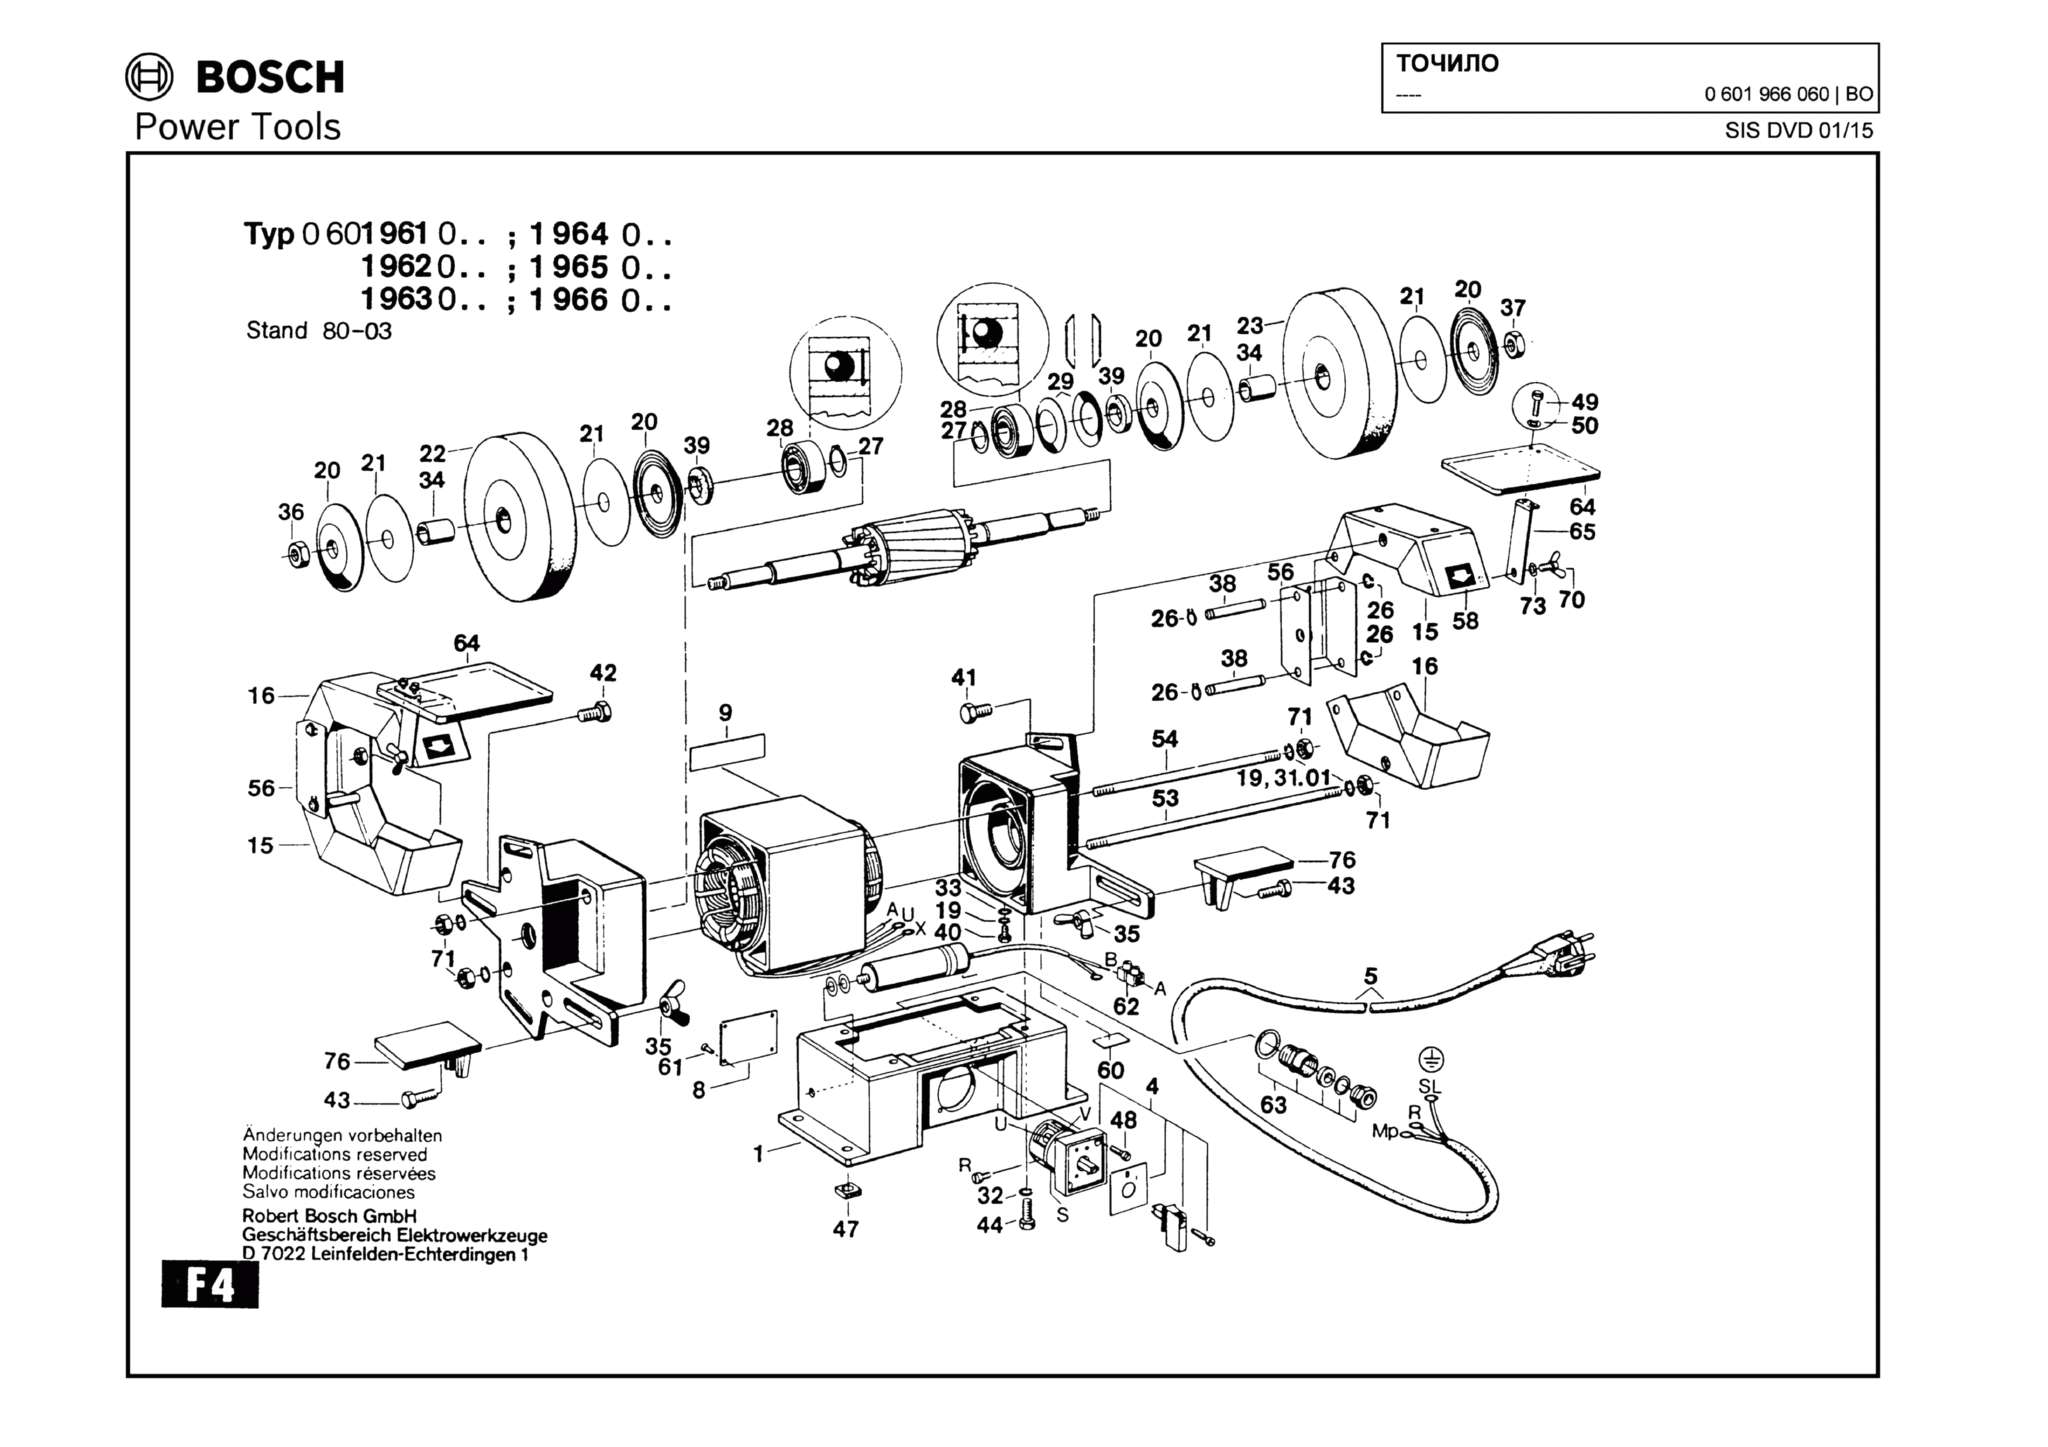 Запчасти, схема и деталировка Bosch (ТИП 0601966060)